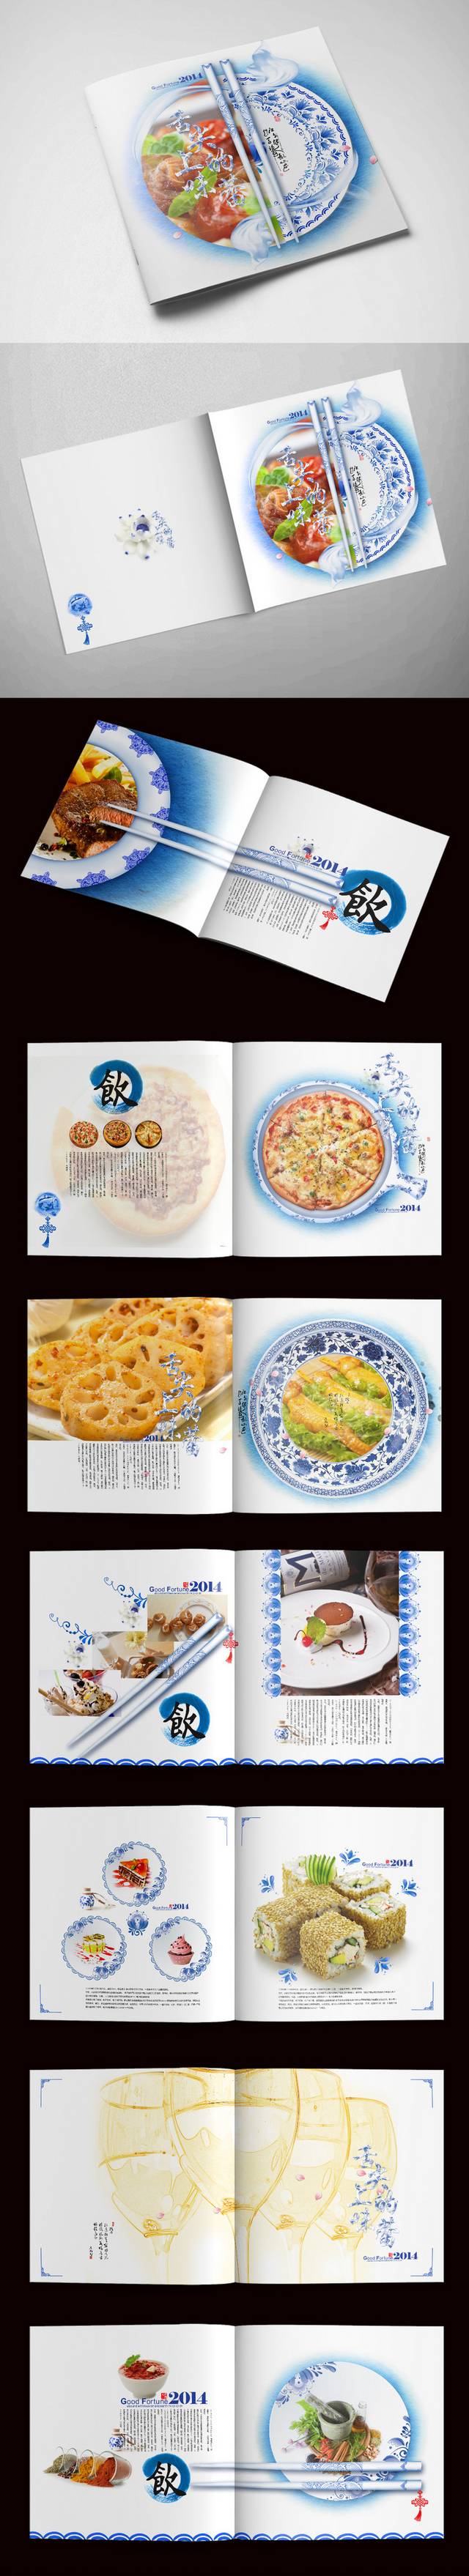 美食小吃画册